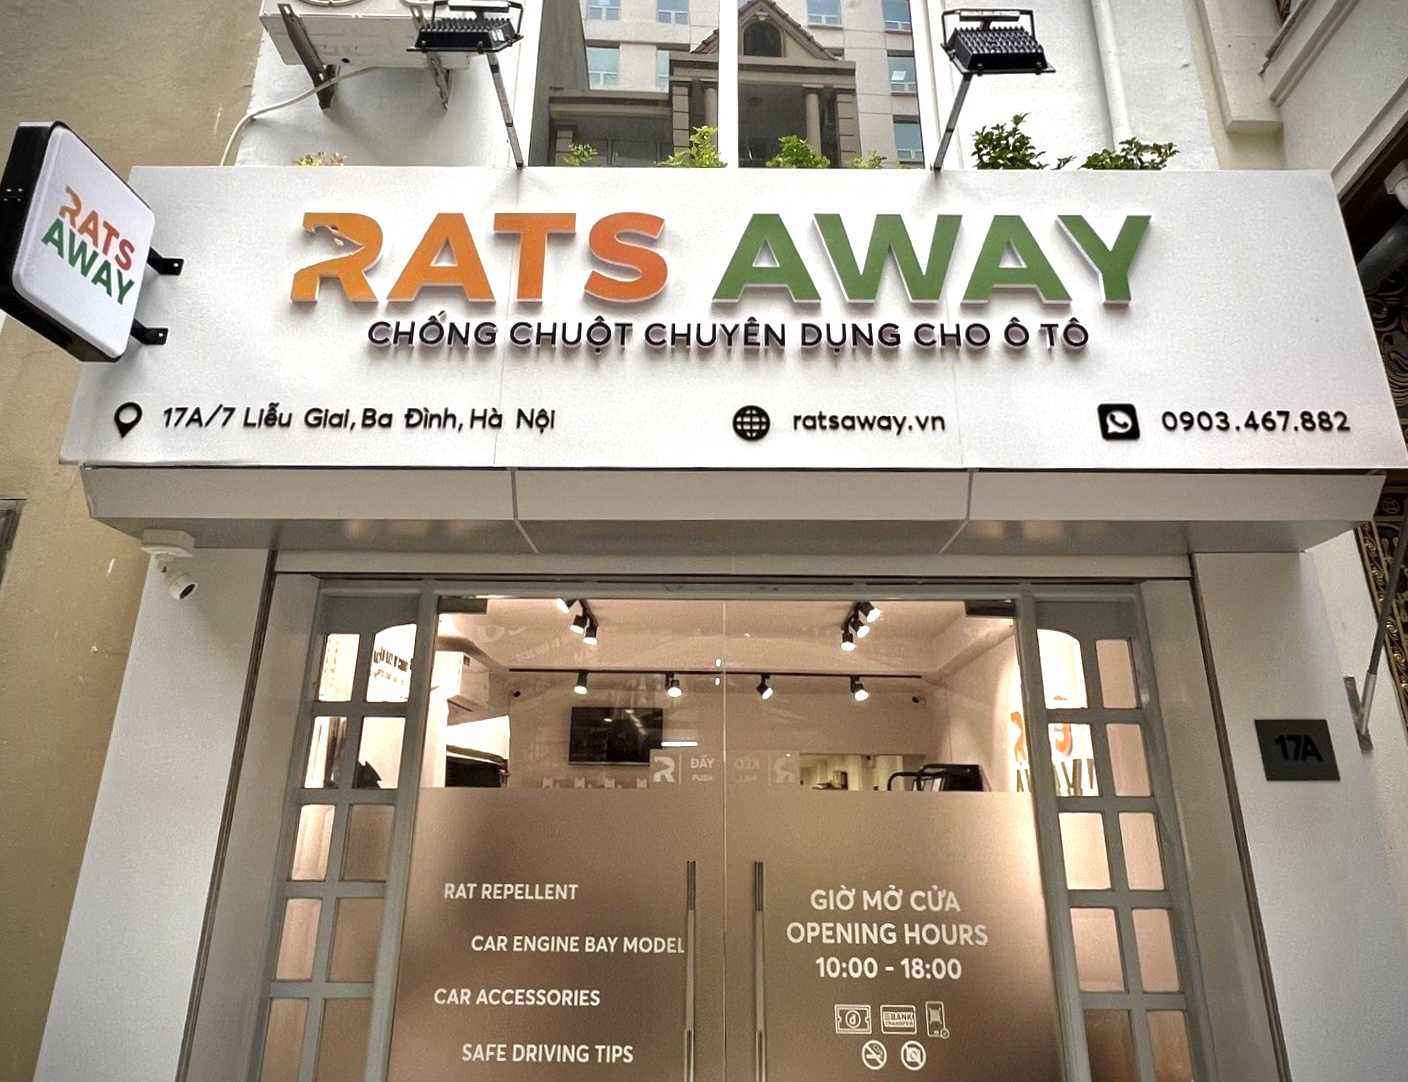 Rats Away - Sản phẩm chống chuột chuyên dụng của Việt Nam cho ô tô đã thử nghiệm trên 100 xe với hiệu quả tới 96% - Ảnh 5.